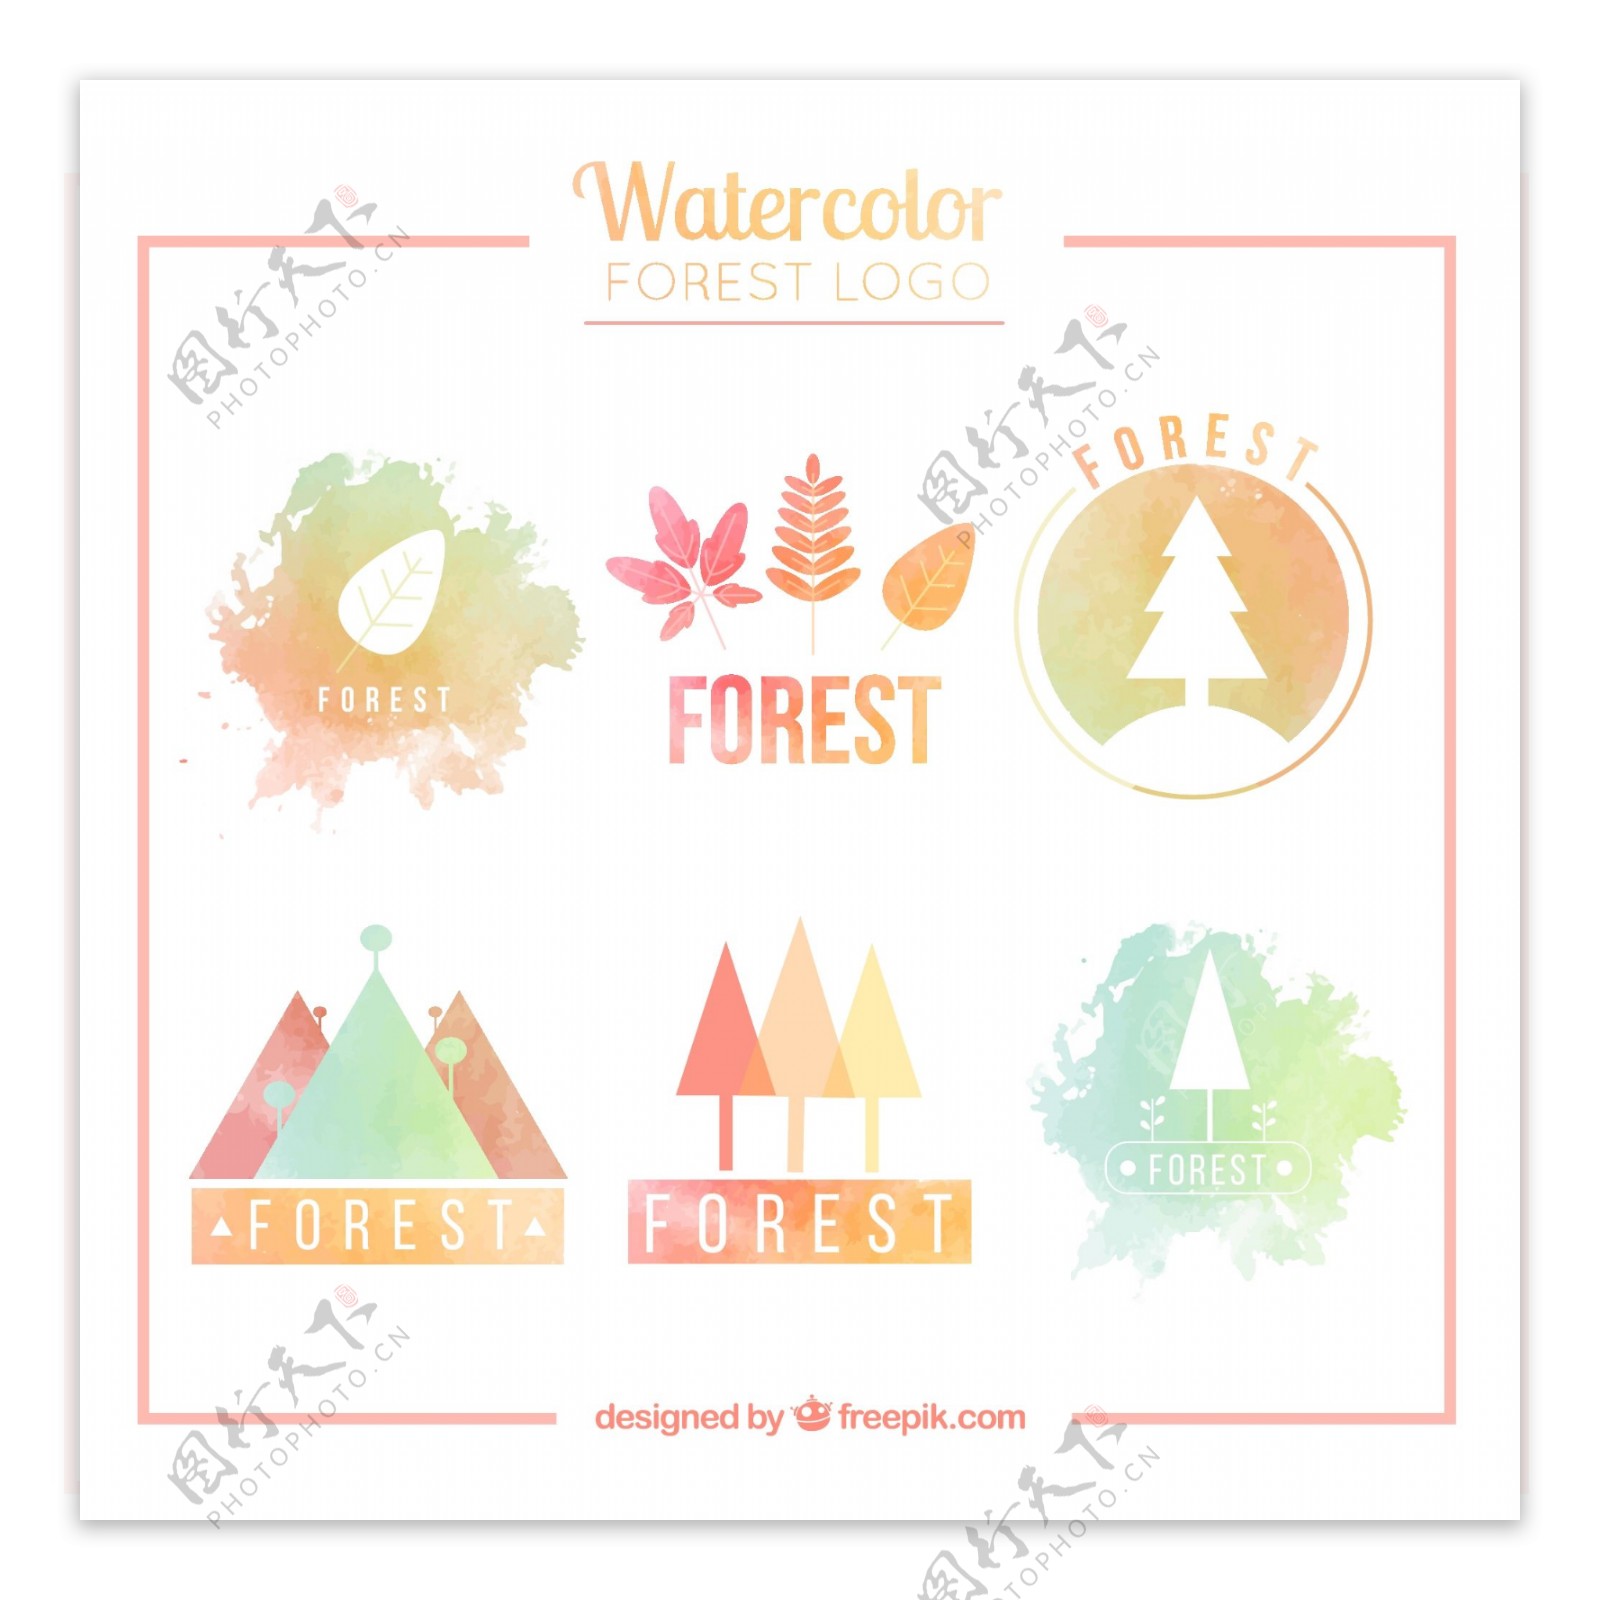 水彩绘森林标志